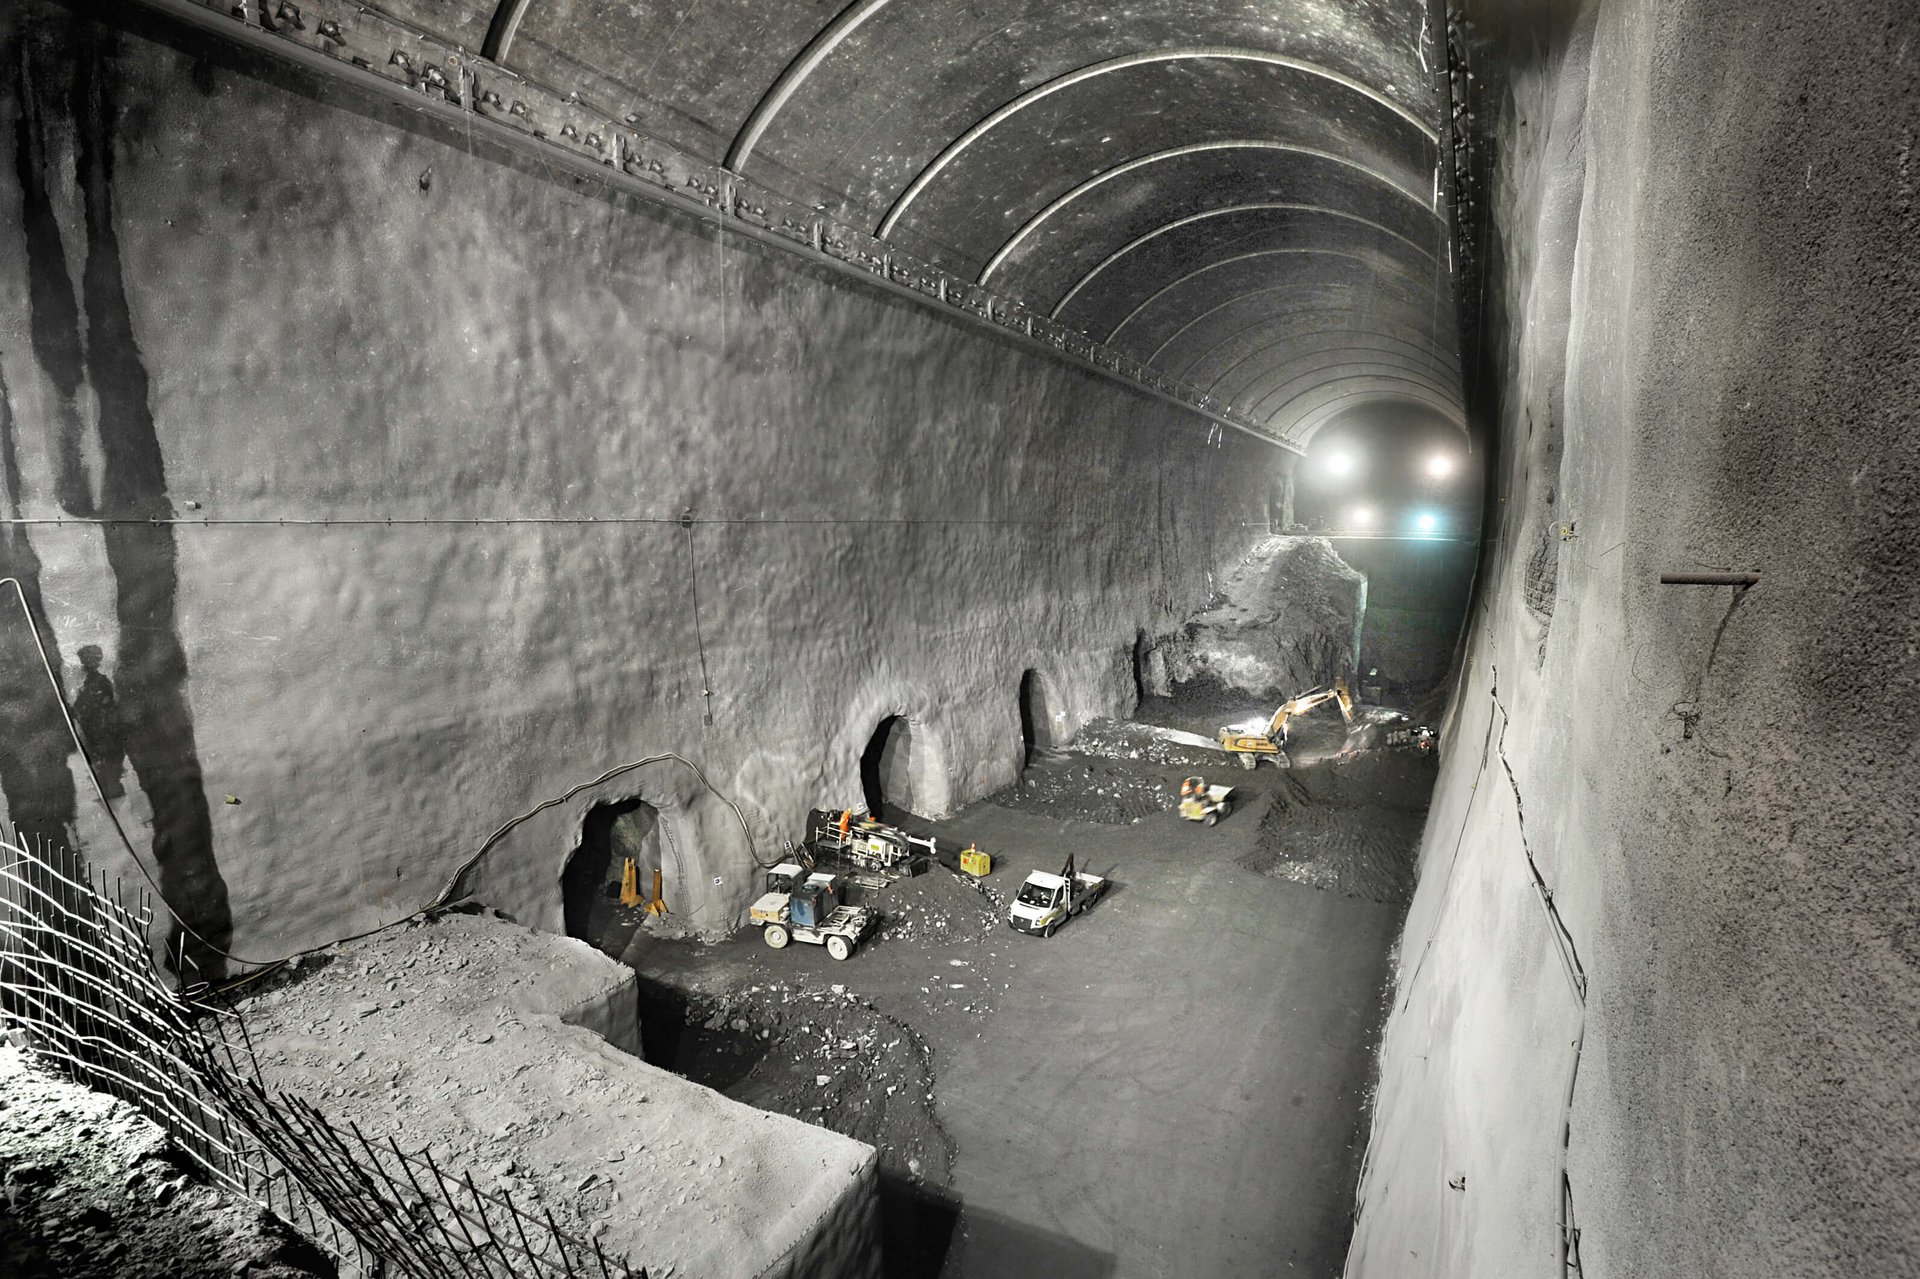 Das Bild zeigt eine typische Szene aus dem Bau eines Kraftwerks. Der Tunnel ist ein langer, dunkler und feuchter Raum. Die Wände des Tunnels sind aus Beton und werden beleuchtet. Am Boden des Tunnels liegen Schienen, auf denen der Bagger fährt.